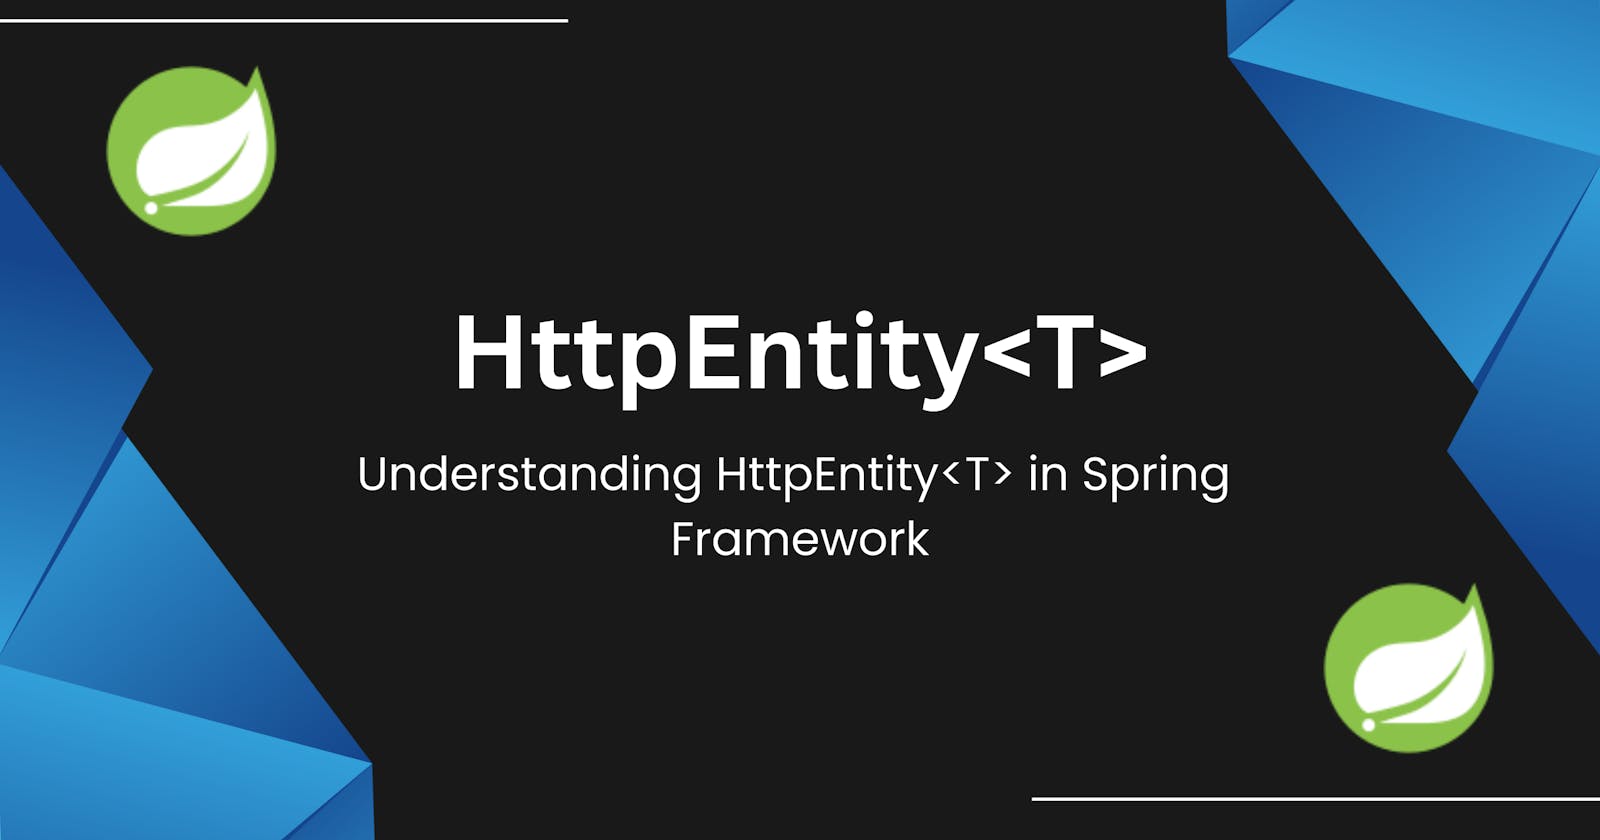 "HttpEntity in Spring Framework"